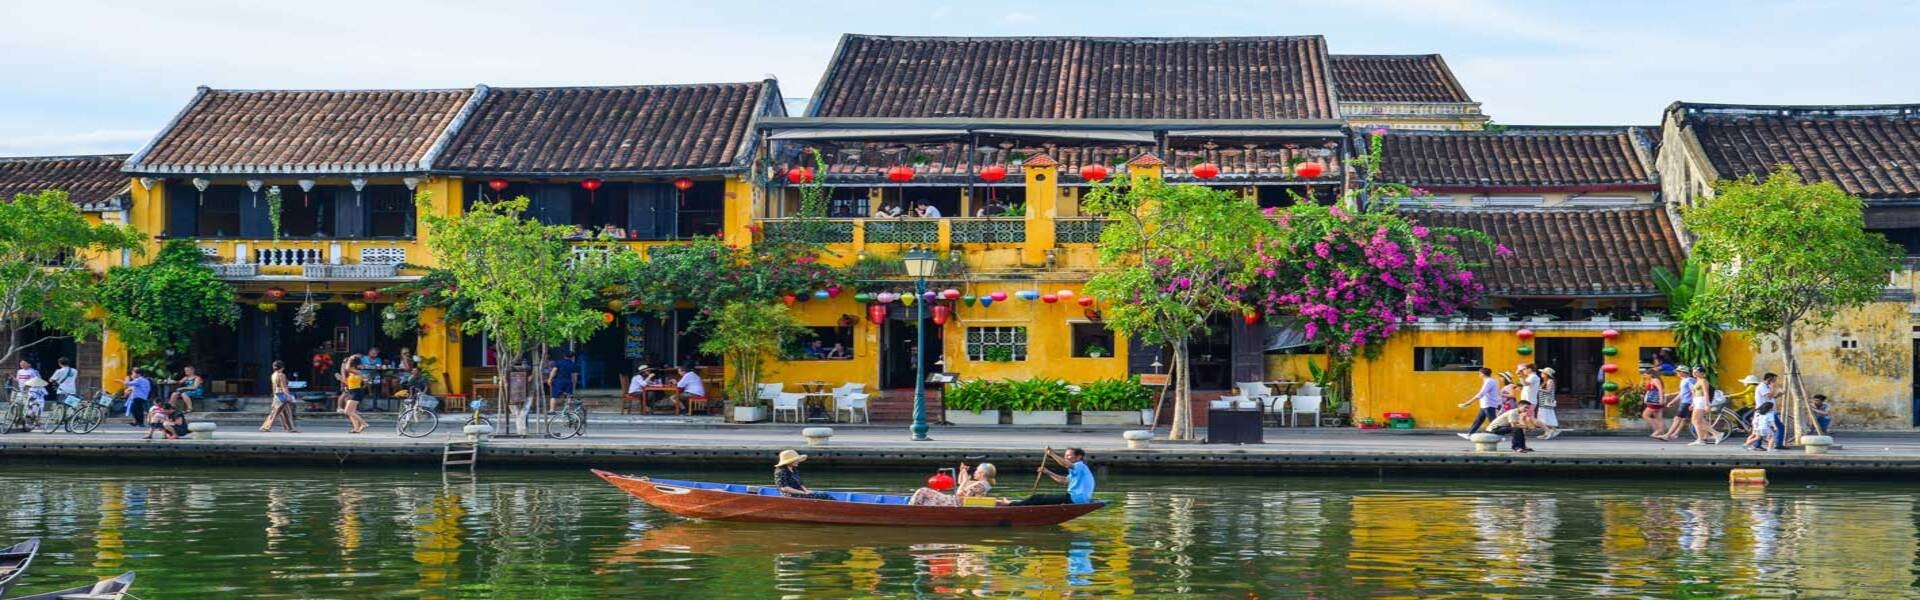 Diễn đàn du lịch Mekong 2022: Tái thiết ngành du lịch - Kiên cường phục hồi du lịch